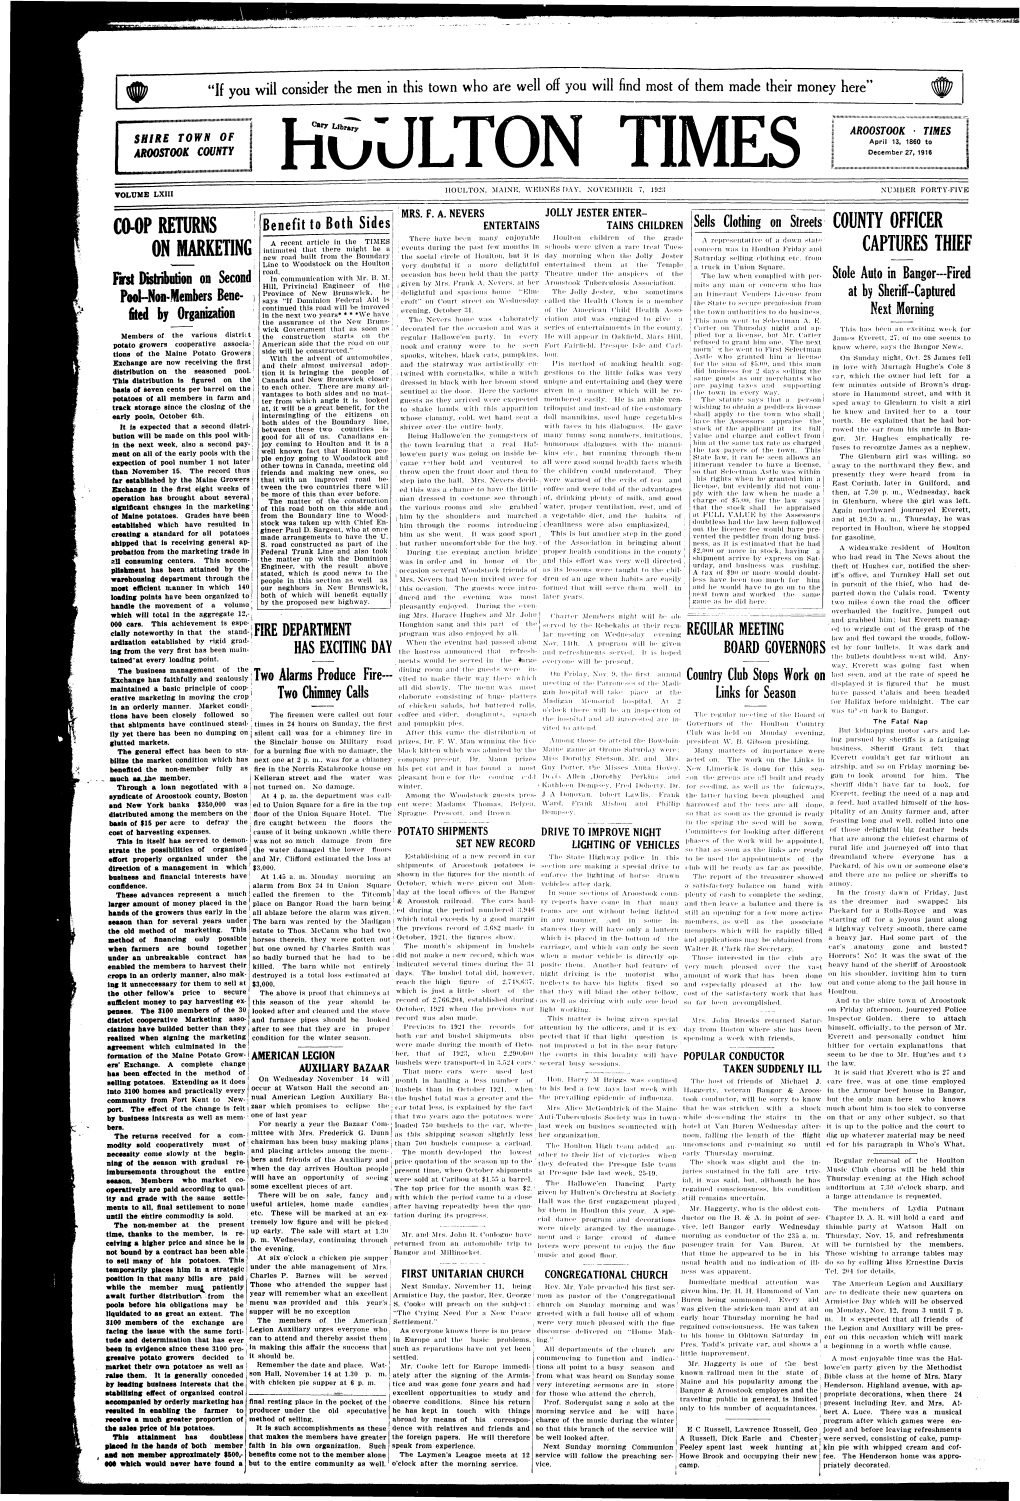 Houlton Times, November 7, 1923